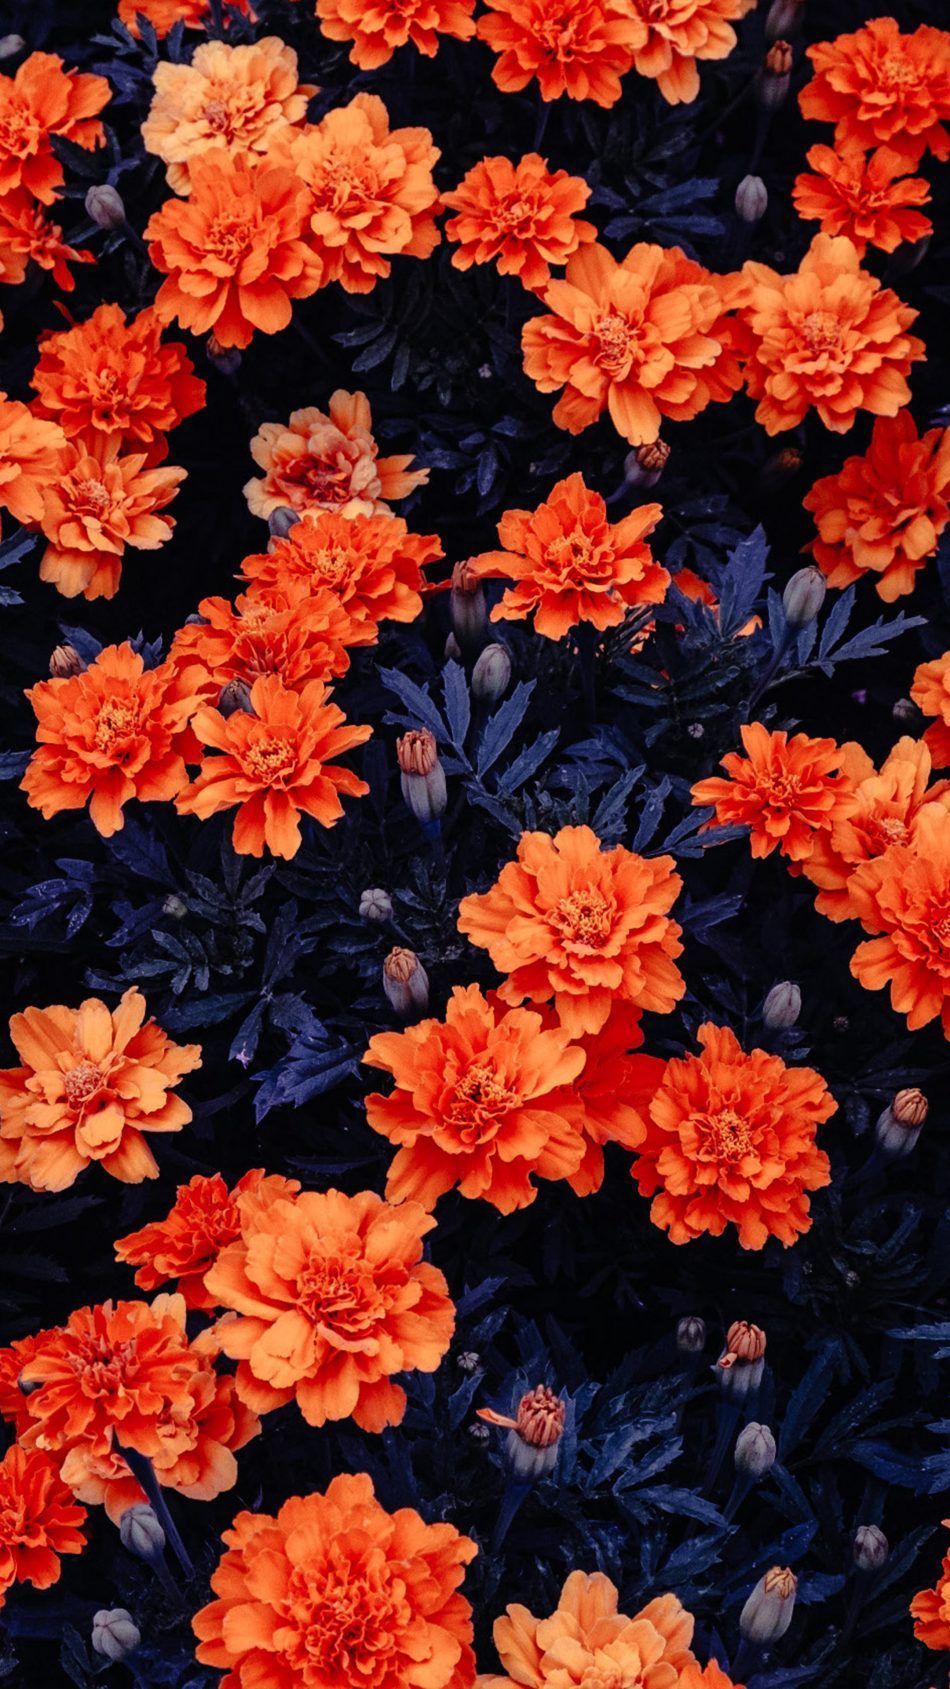 Orange Flowers Garden Free 4K Ultra HD Mobile Wallpaper in 2020